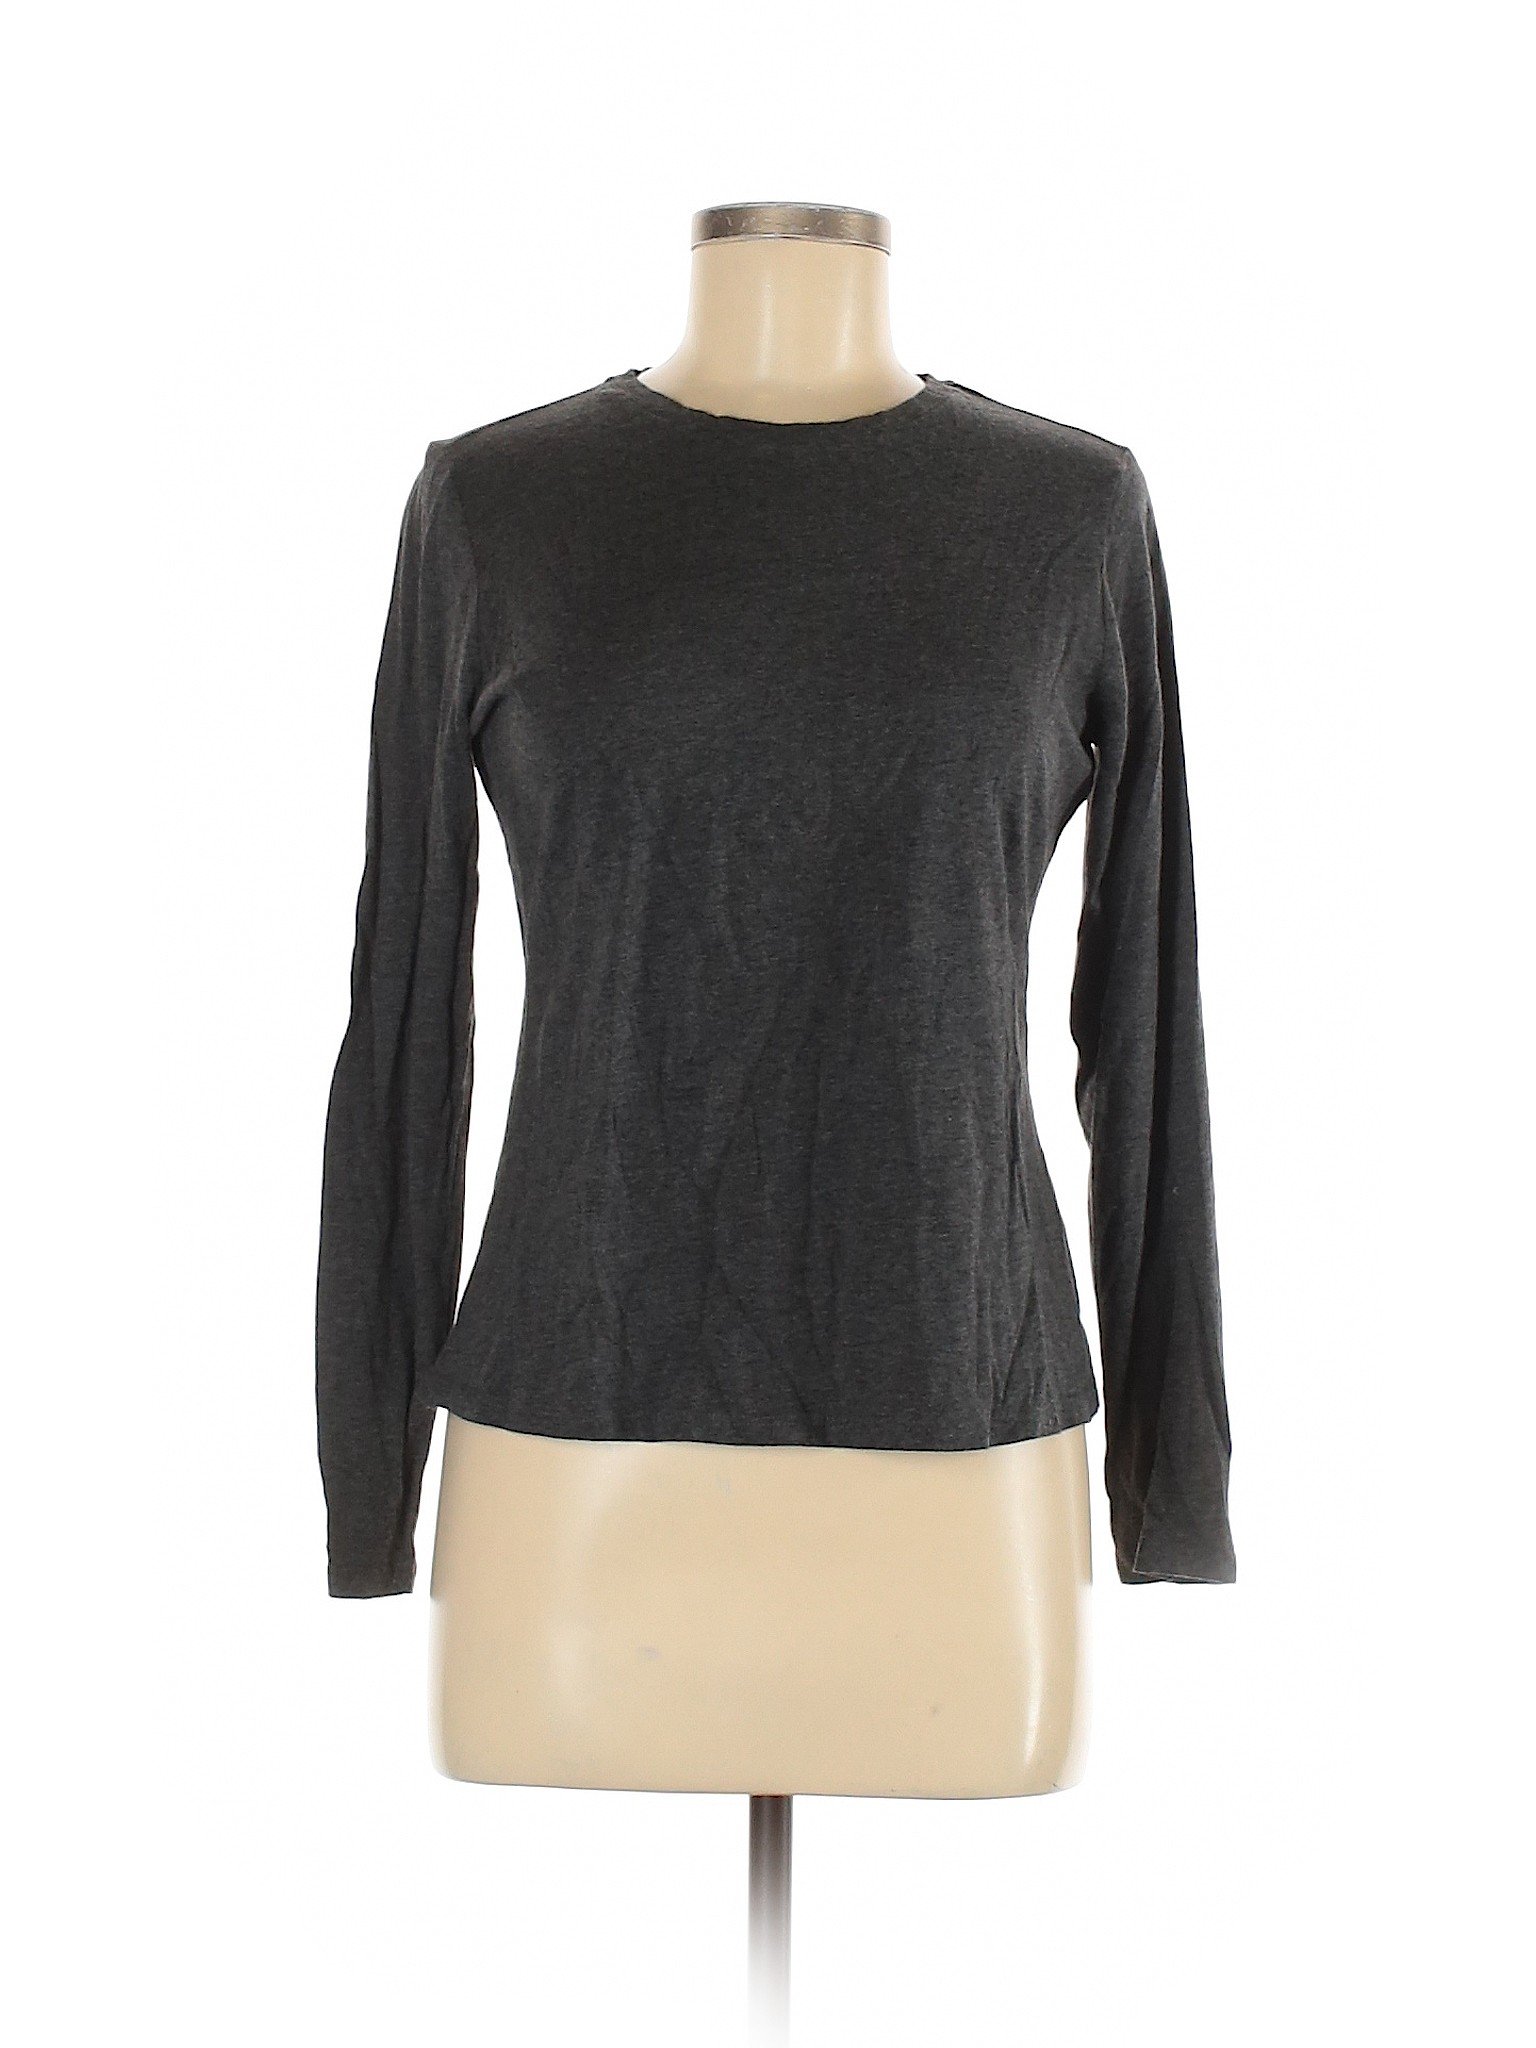 Boden Women Gray Long Sleeve T-Shirt M | eBay